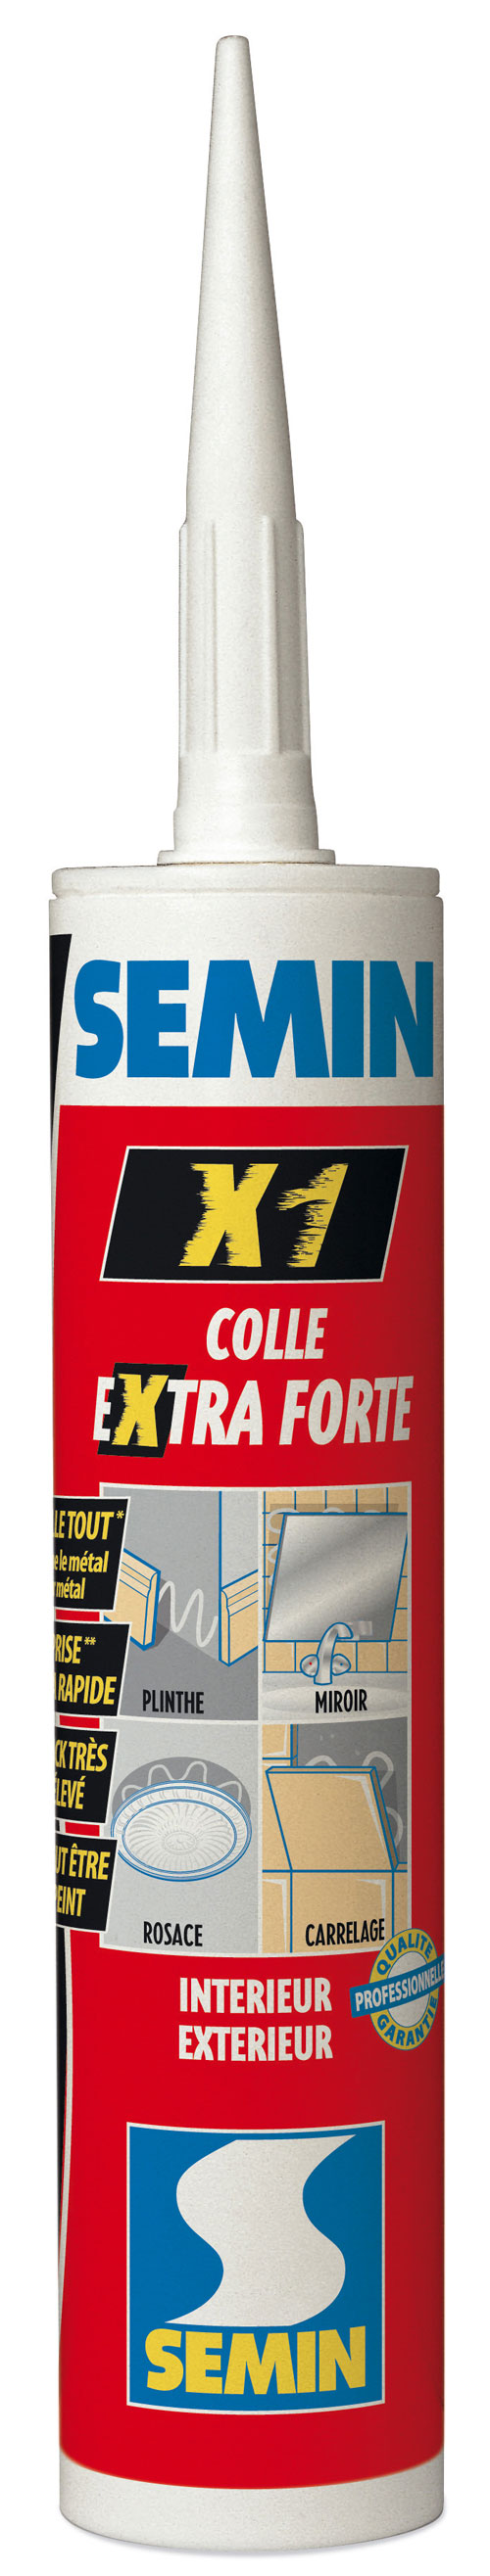 Colle extra forte Semin X1 en cartouche (290ml) pour collage haute performance tous matériaux en intérieur et en extérieur